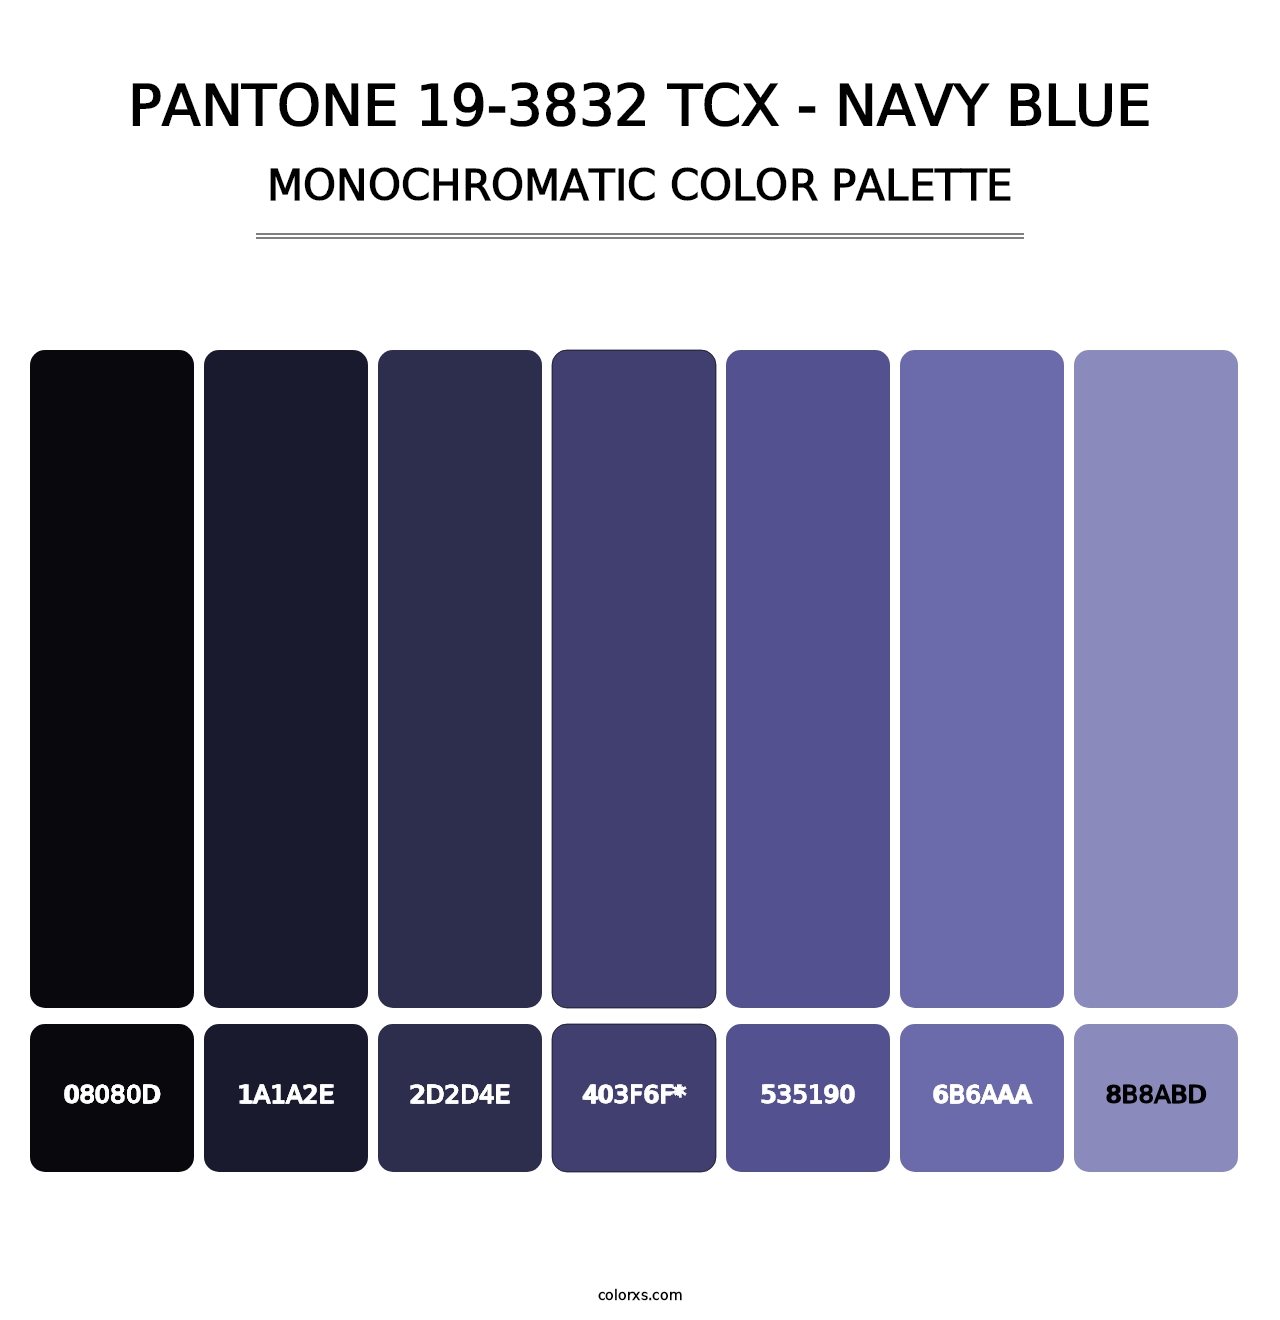 PANTONE 19-3832 TCX - Navy Blue - Monochromatic Color Palette